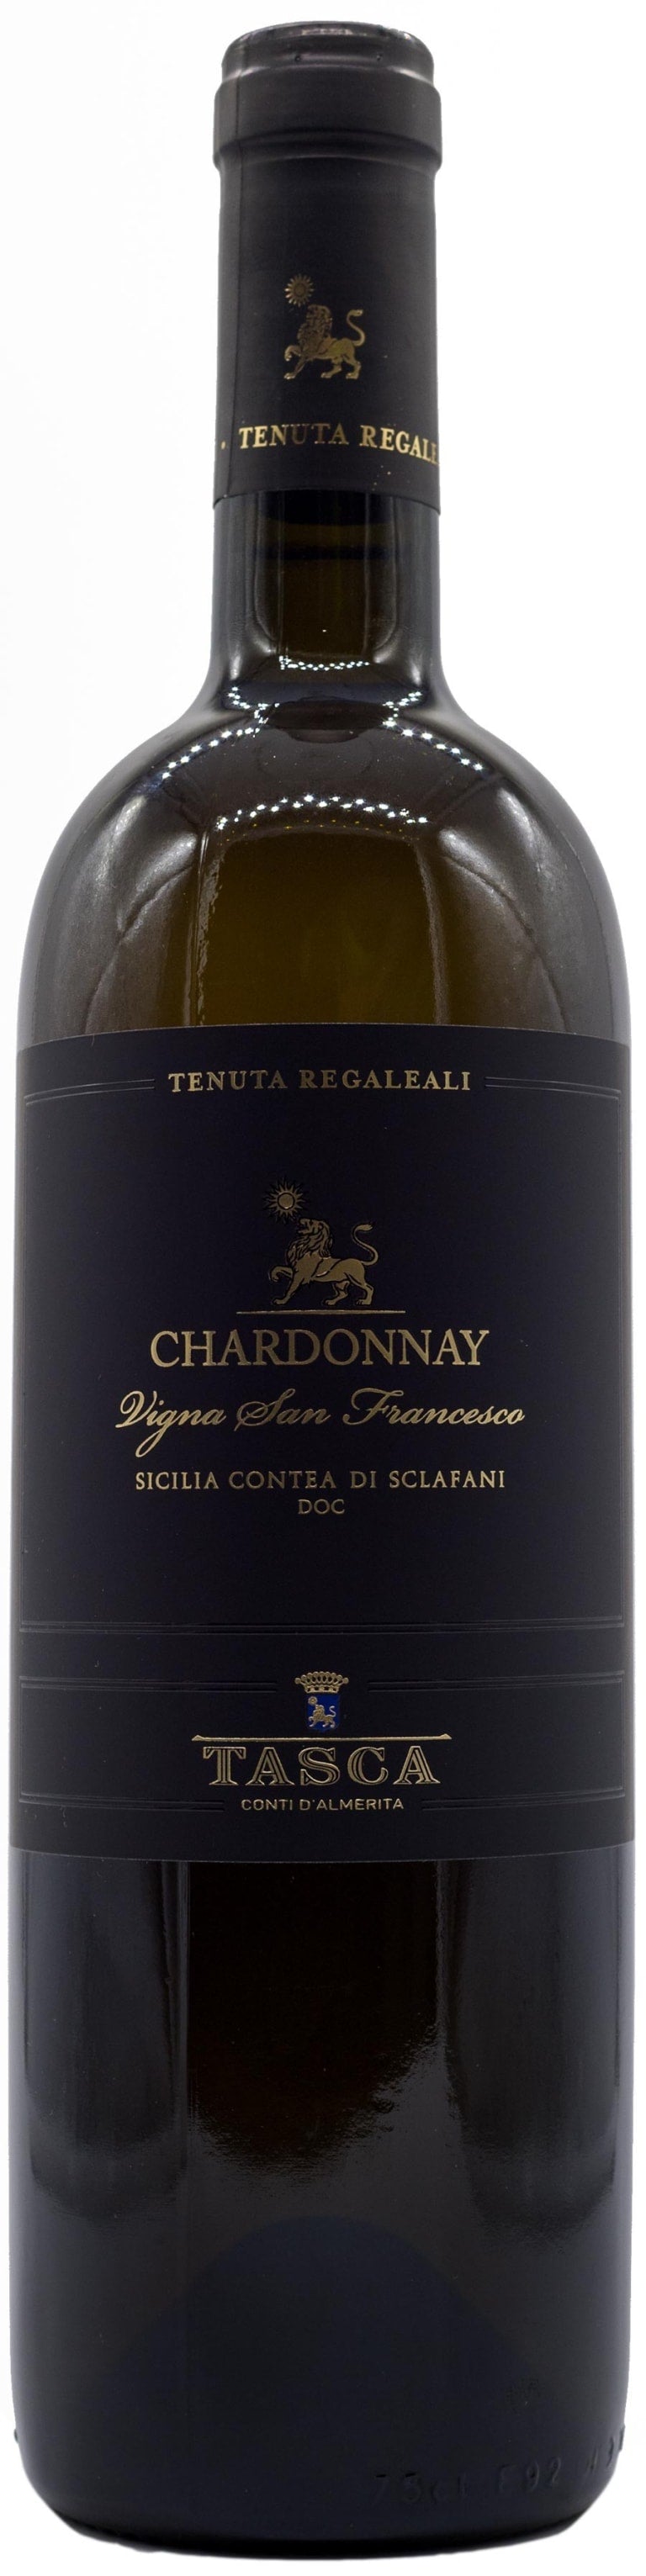 Tenuta Regaleali Chardonnay 2016